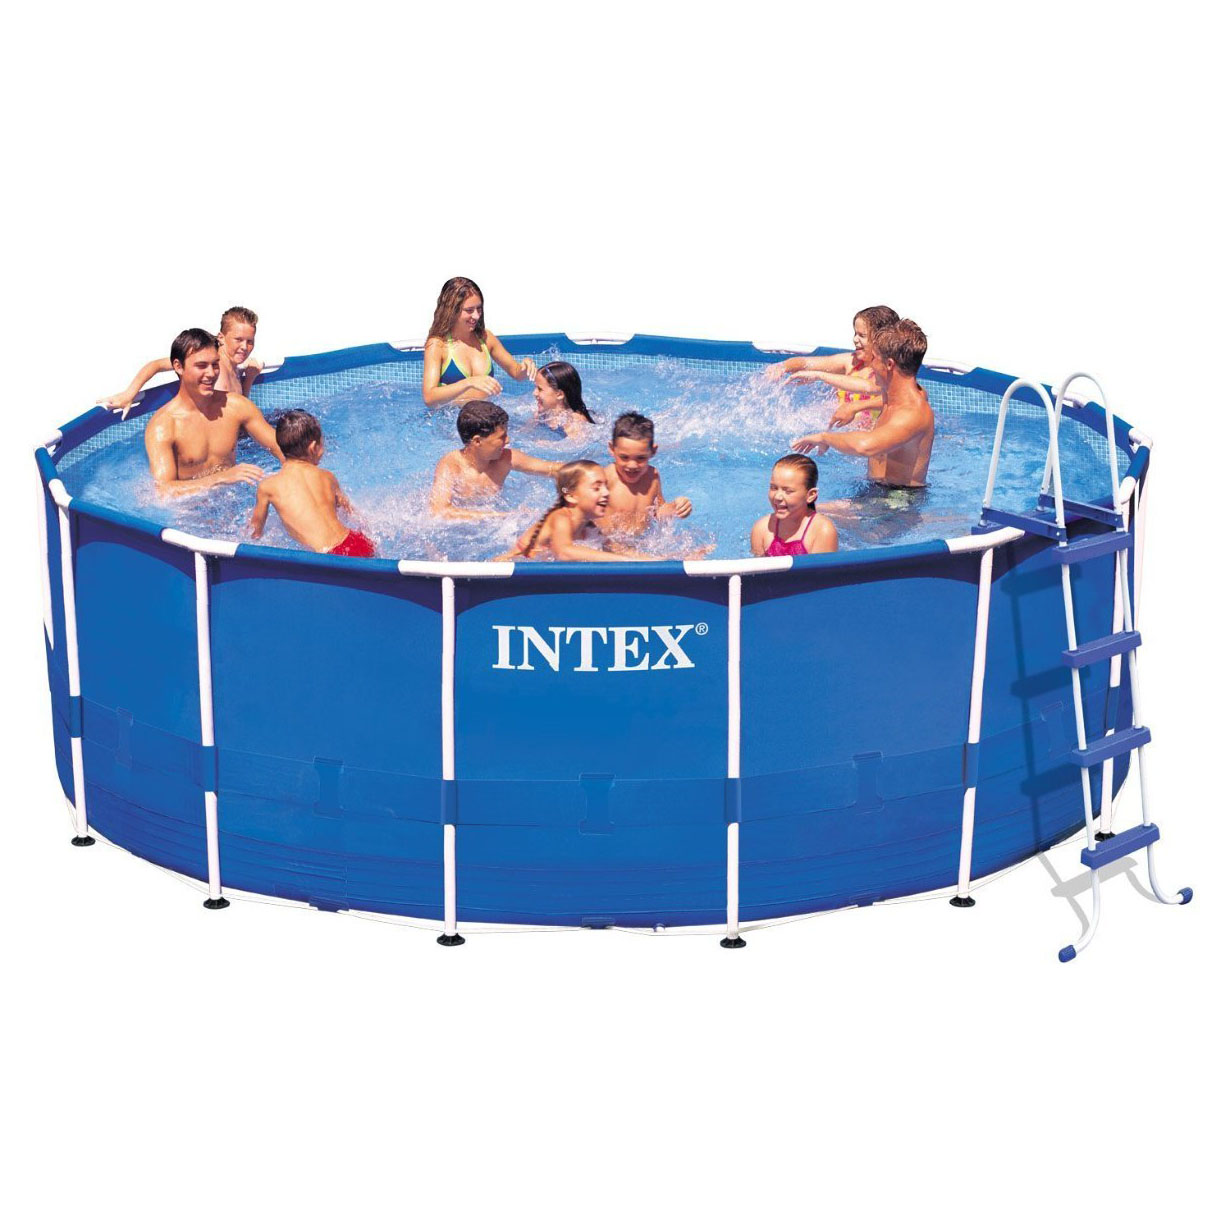 Intex Metal Frame Pool Set, 15-Feet by 48-Inch (Older Model) - image 2 of 7